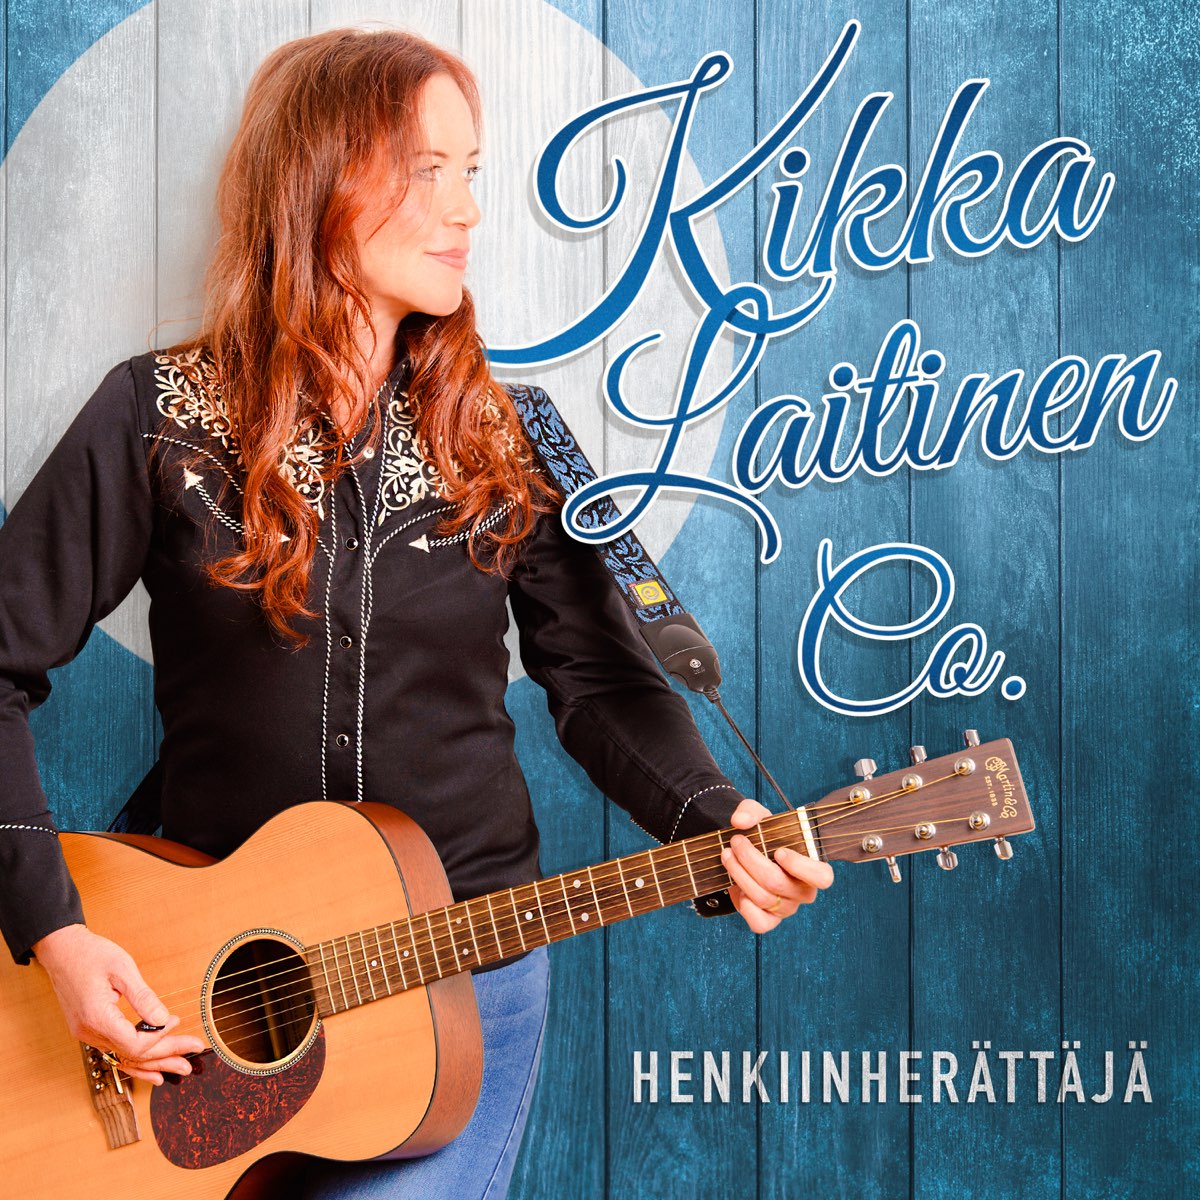 Henkiinherättäjä - Single by Kikka Laitinen on Apple Music